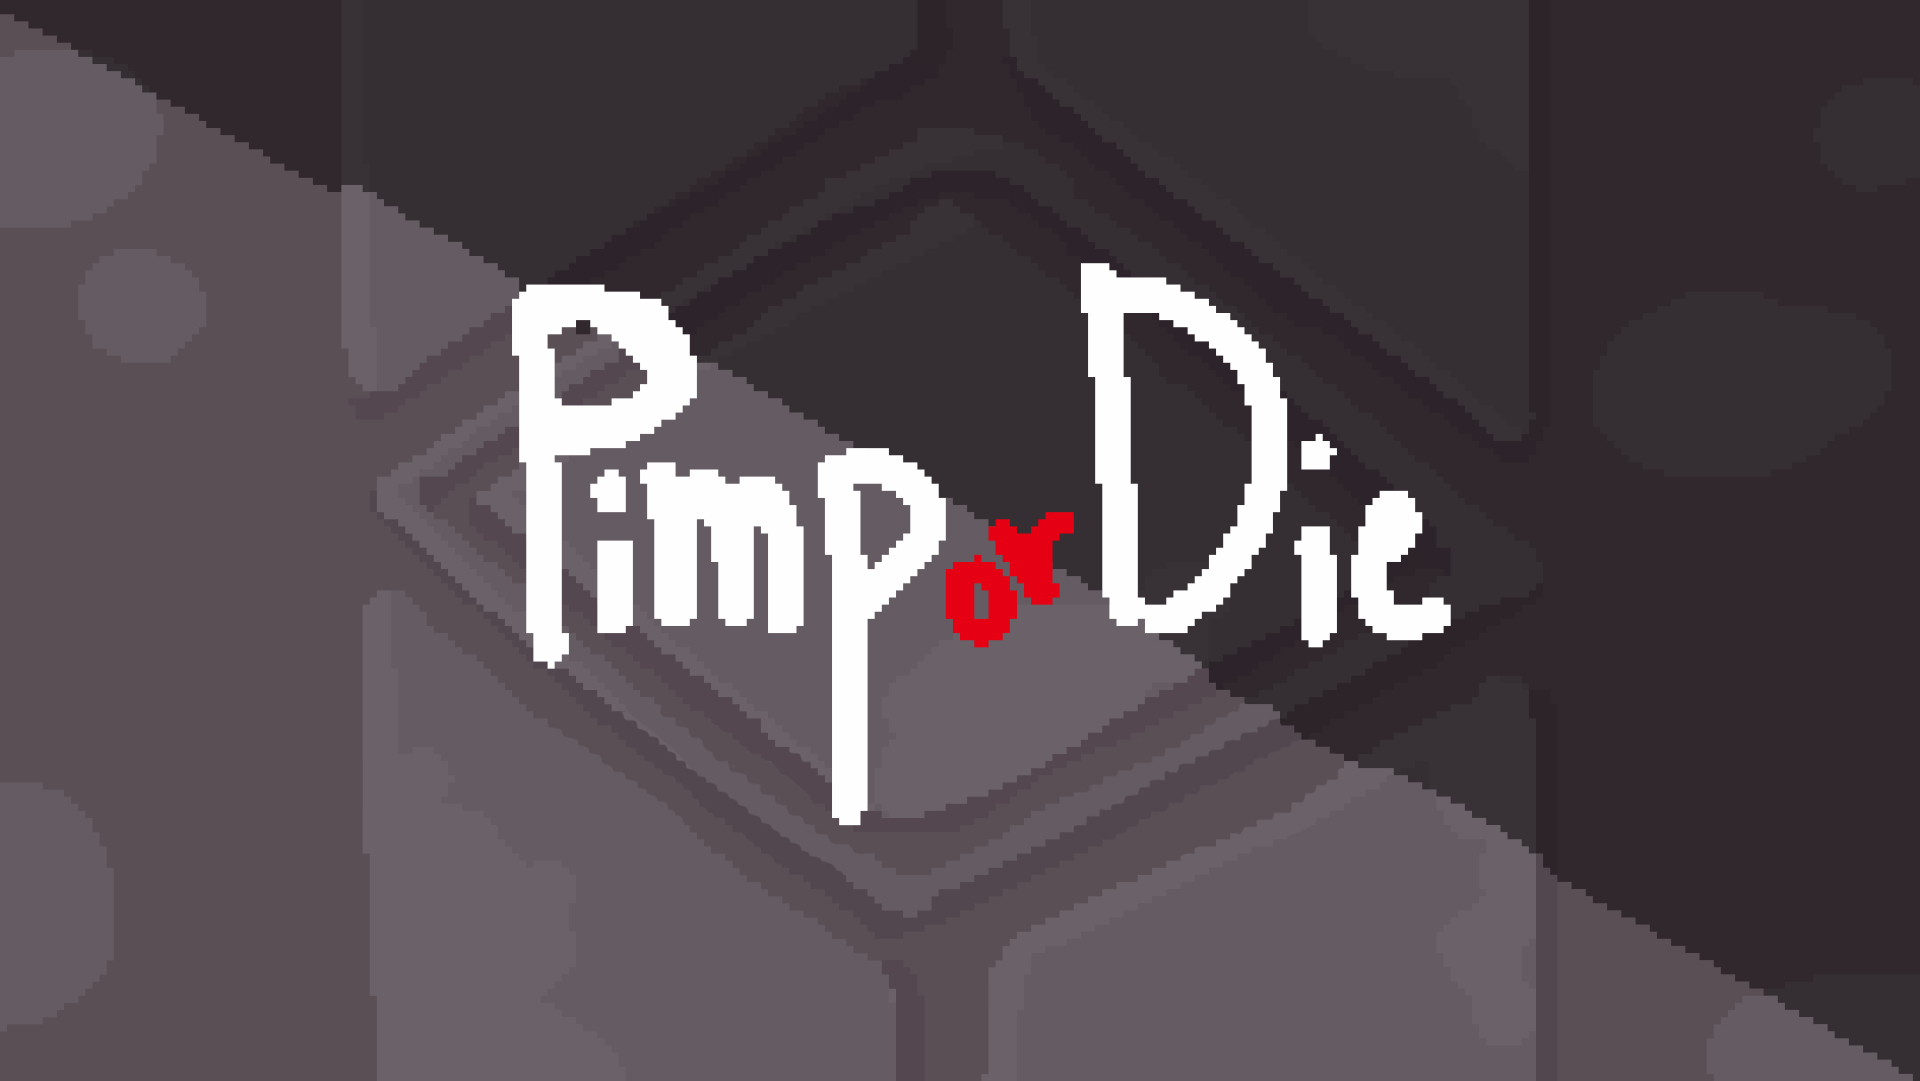 Pimp or Die